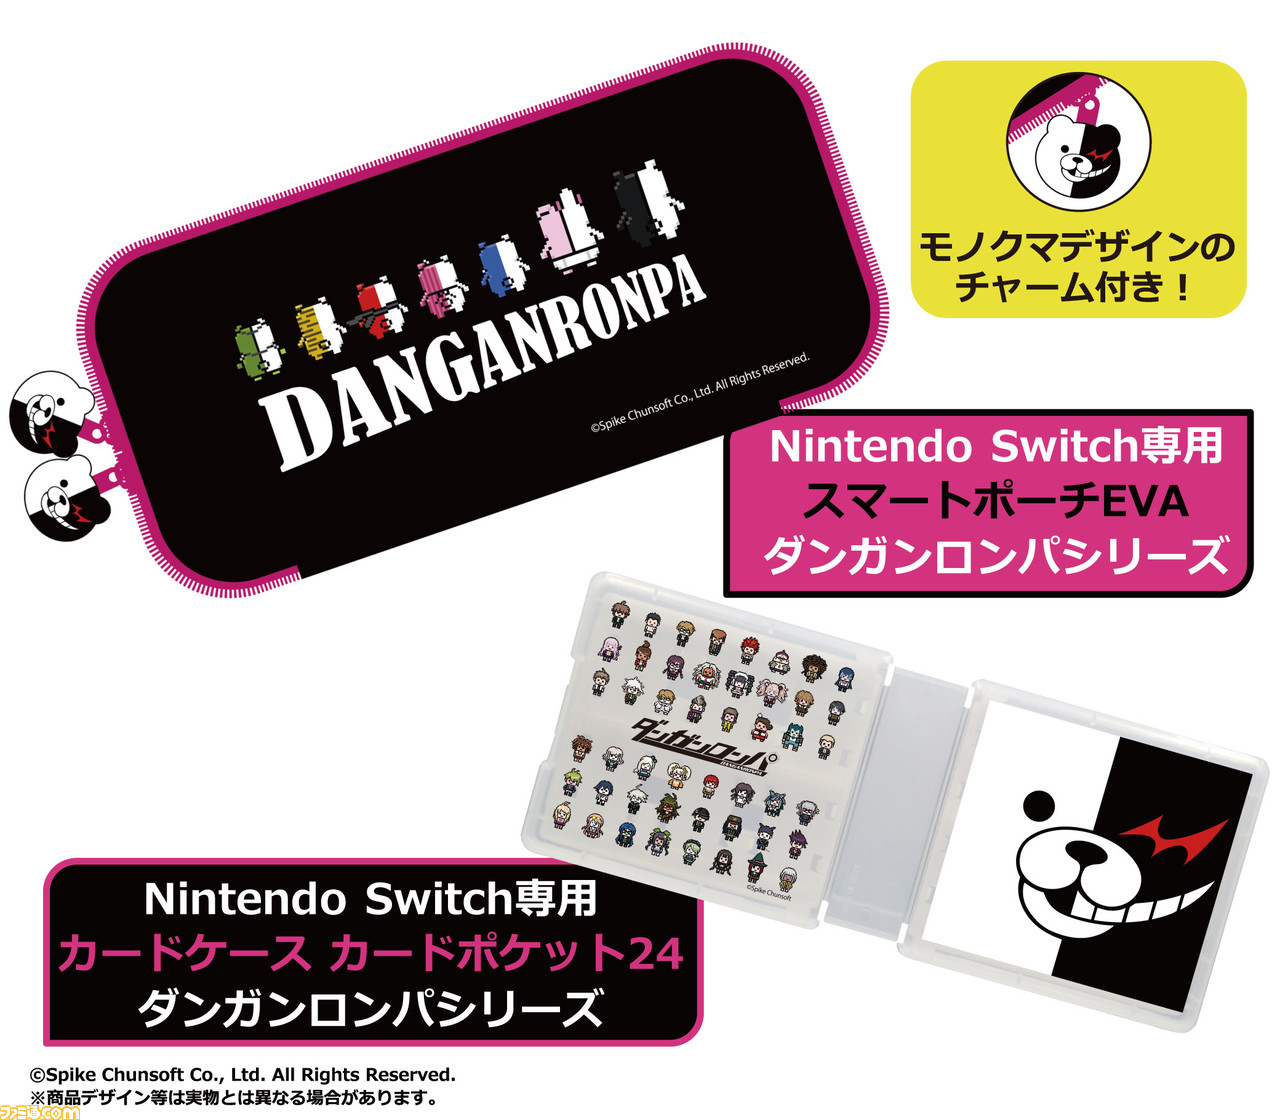 ダンガンロンパ Switch専用ポーチ カードケースが登場 ドット絵のモノクマ モノミ モノクマーズが並んだデザインがかわいい ゲーム エンタメ最新情報のファミ通 Com